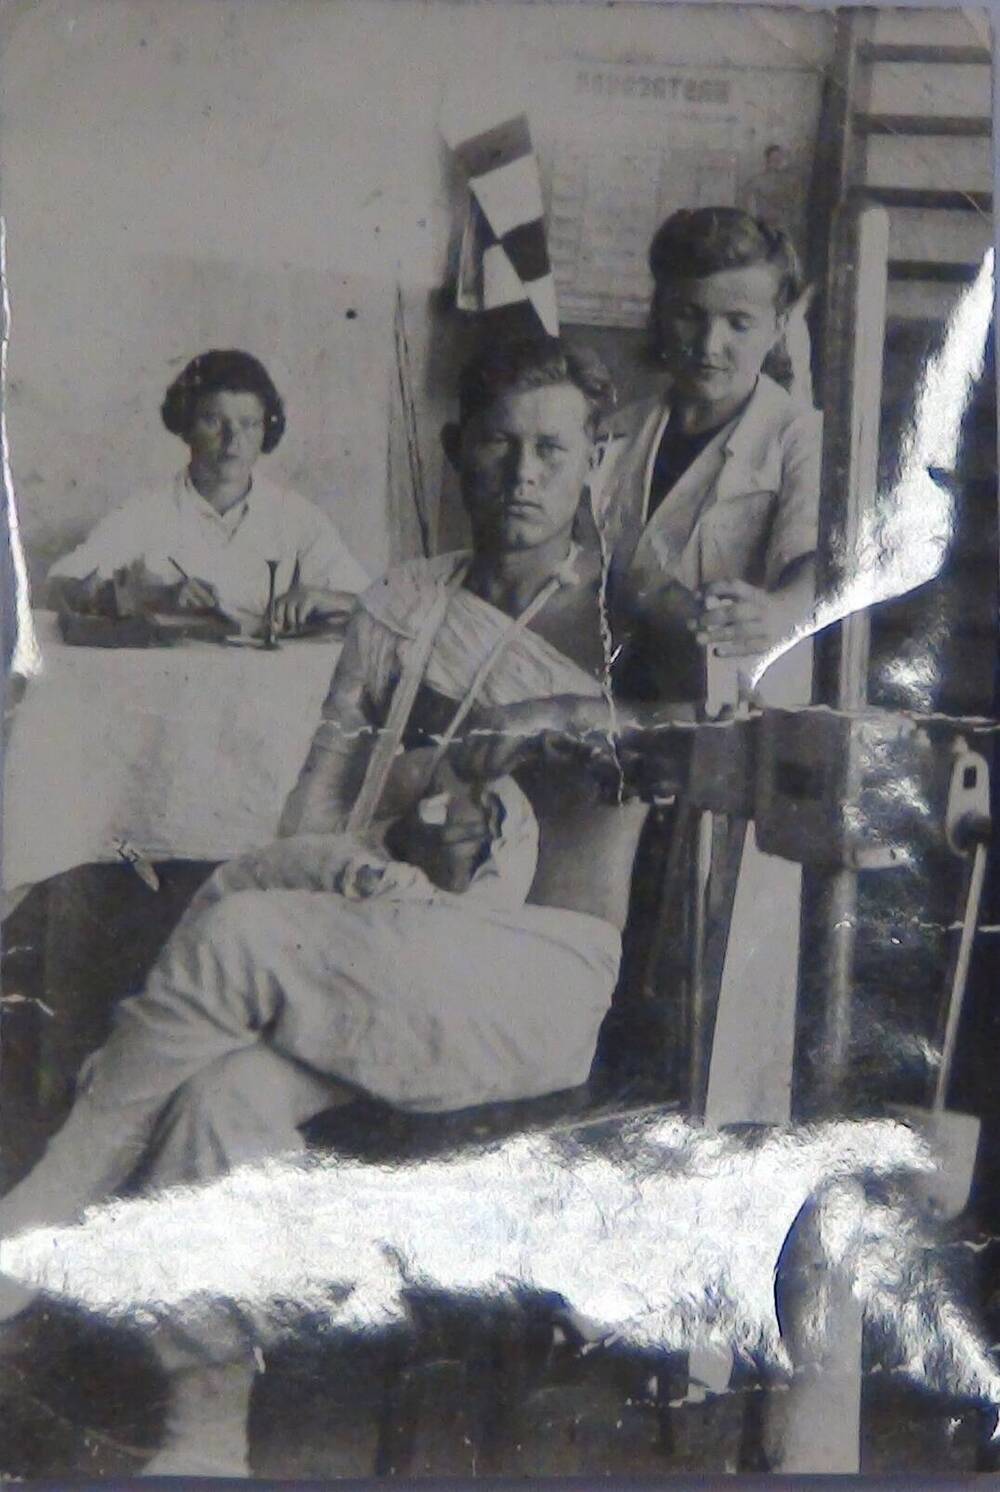 Фото: Вишнев  А.Г. в госпитале  1017, в августе 1944 года на АФН.